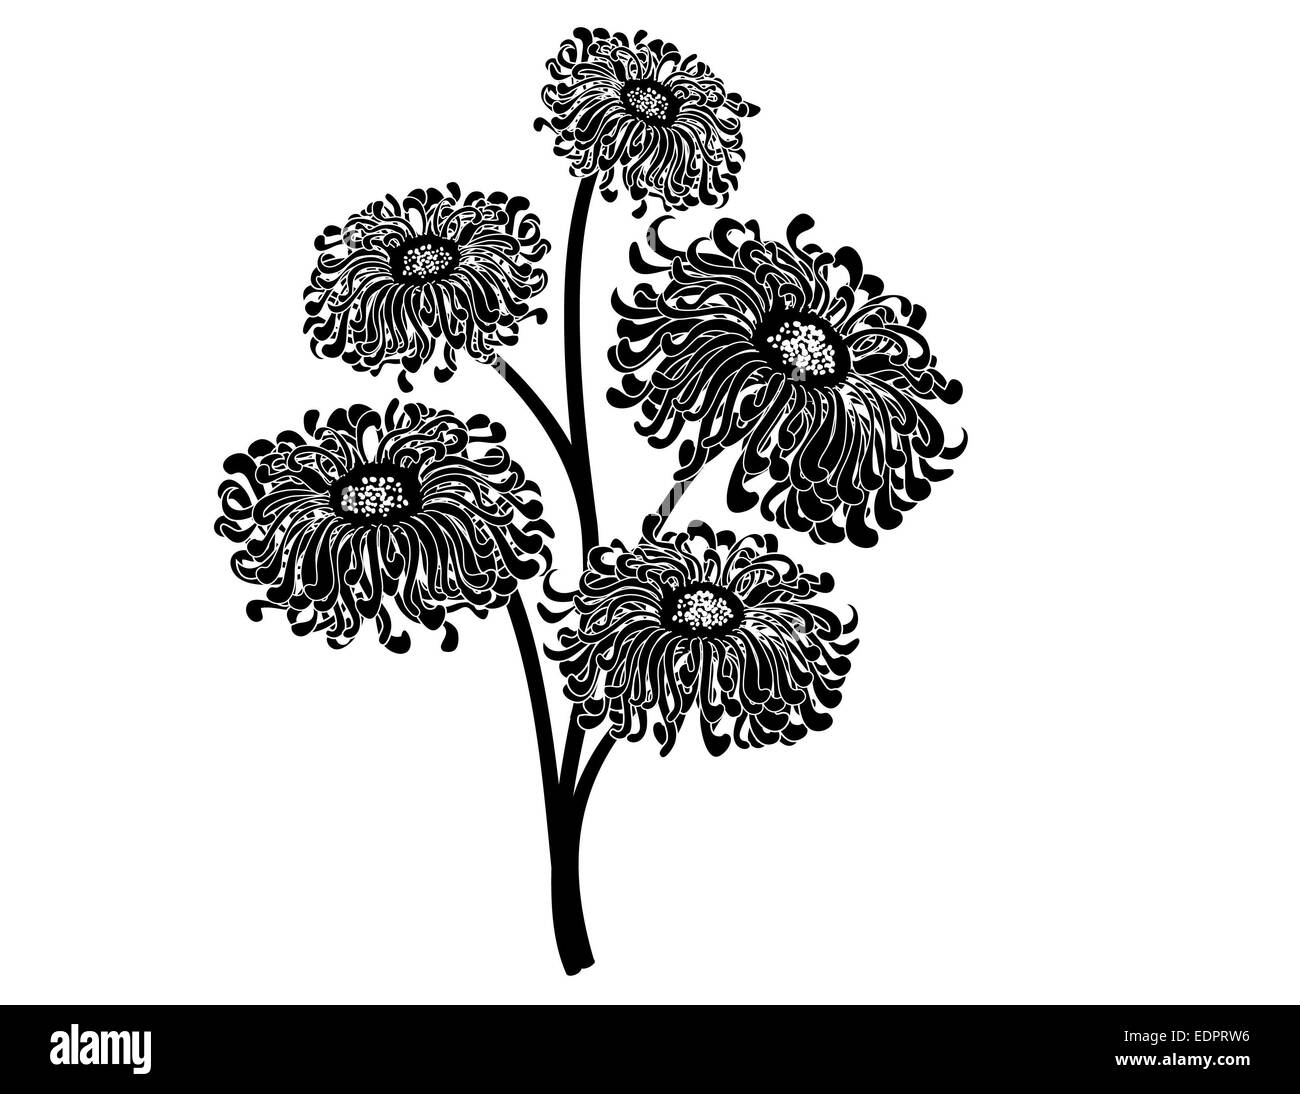 Élégant et détaillé en noir & blanc illustration d'un bouquet de cinq fleurs magnifiques thèmes romantiques ou pour la décoration Banque D'Images